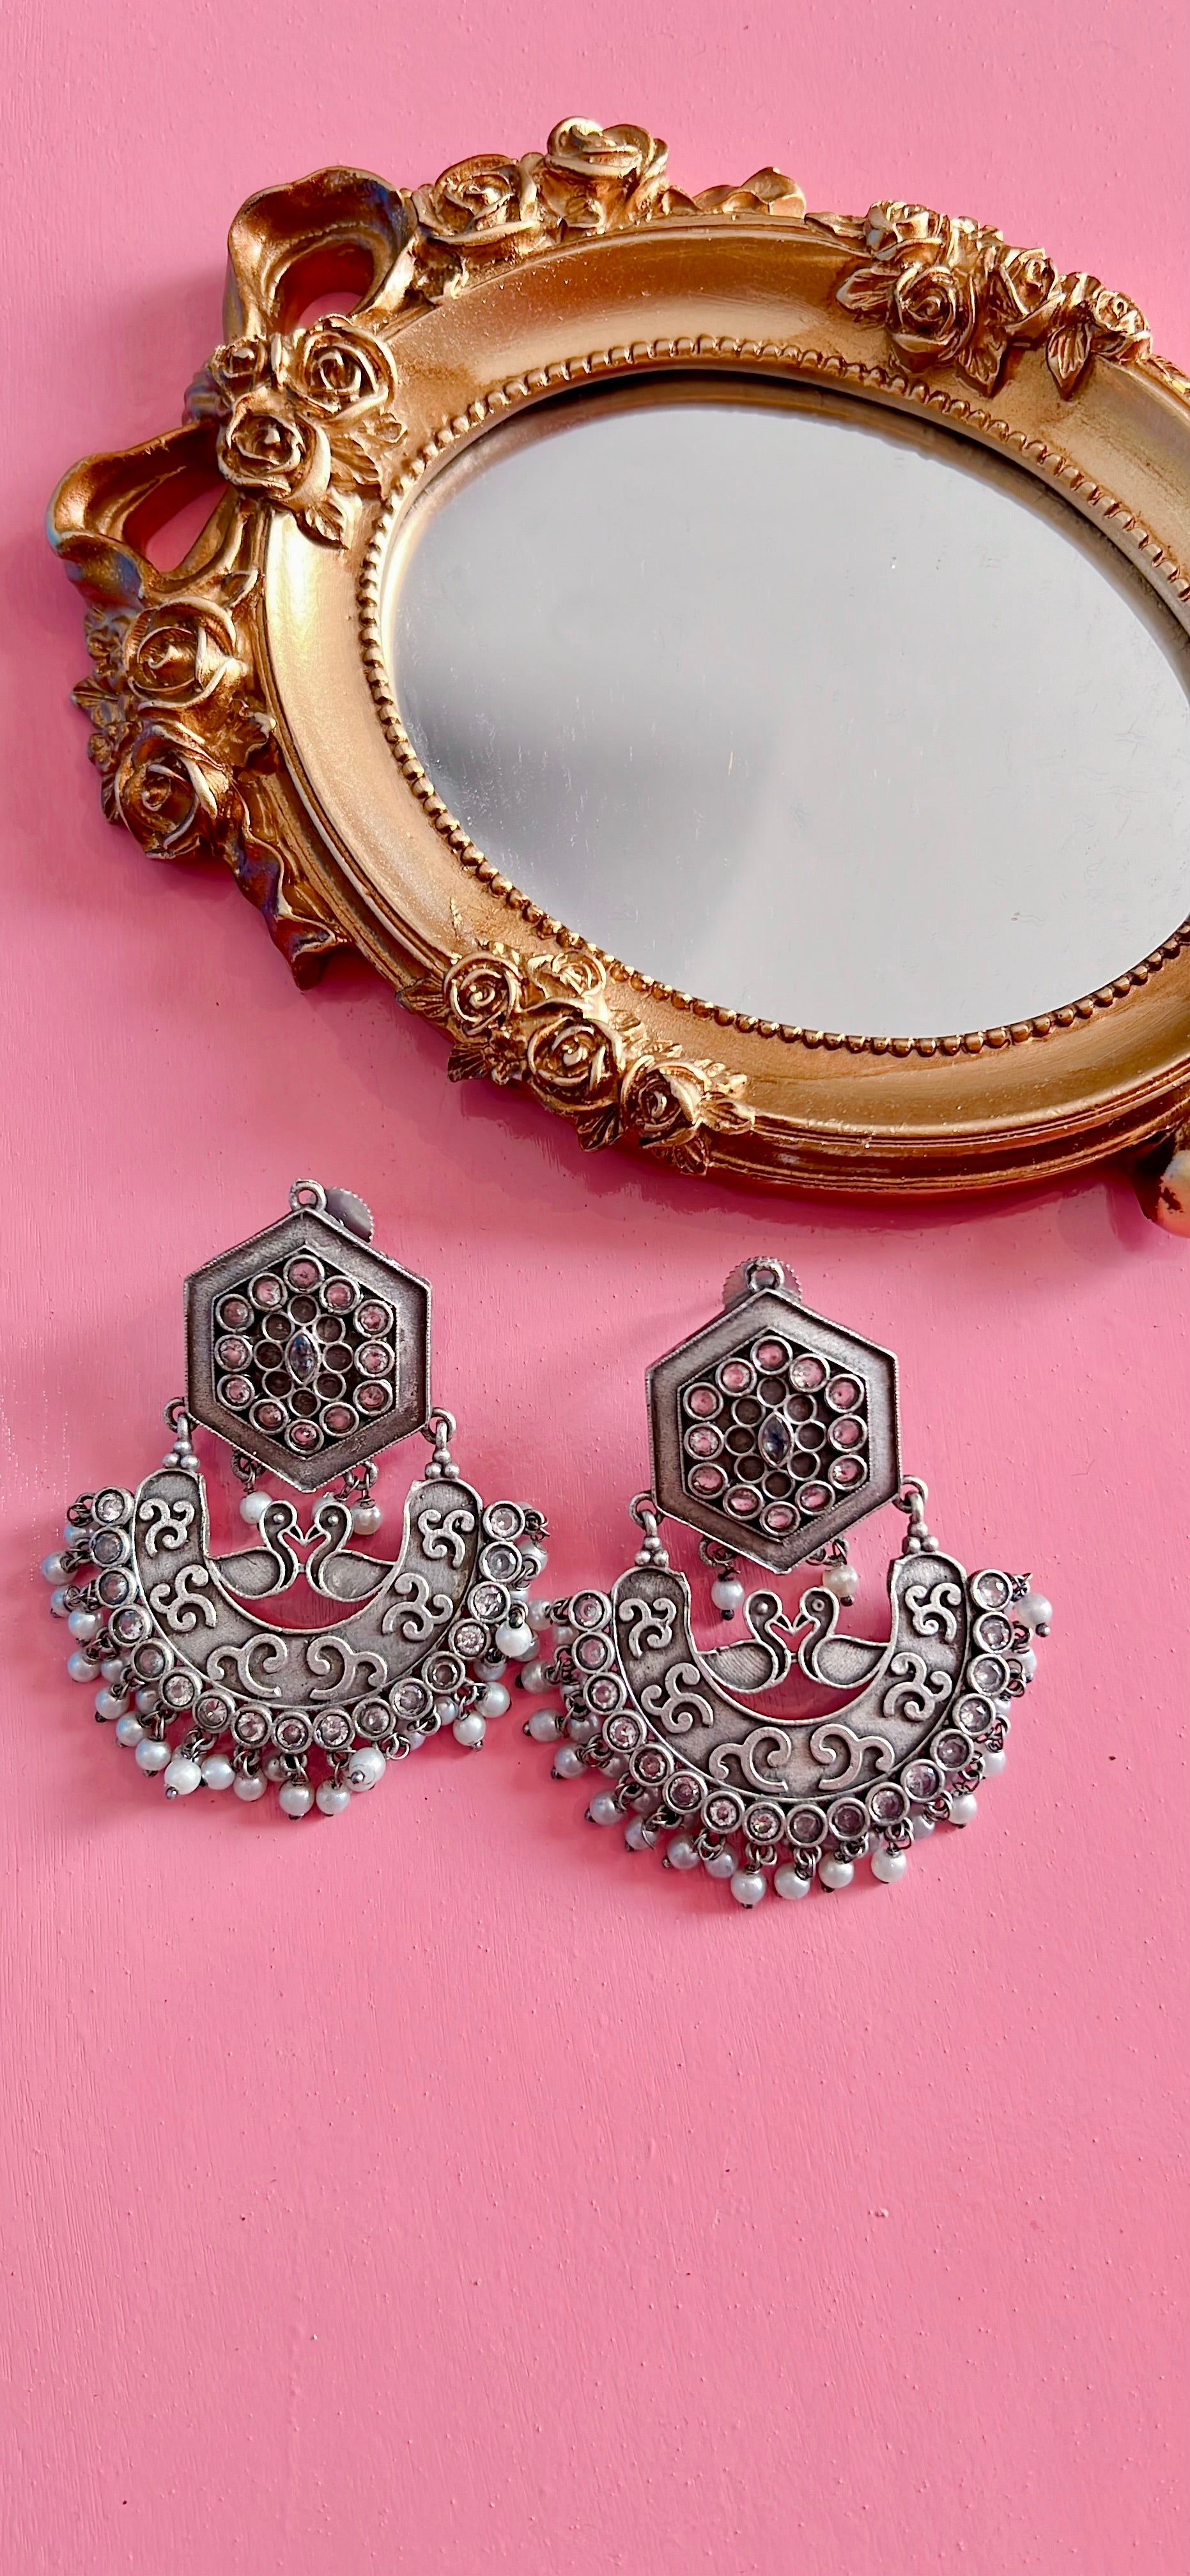 Oxidized silver earrings